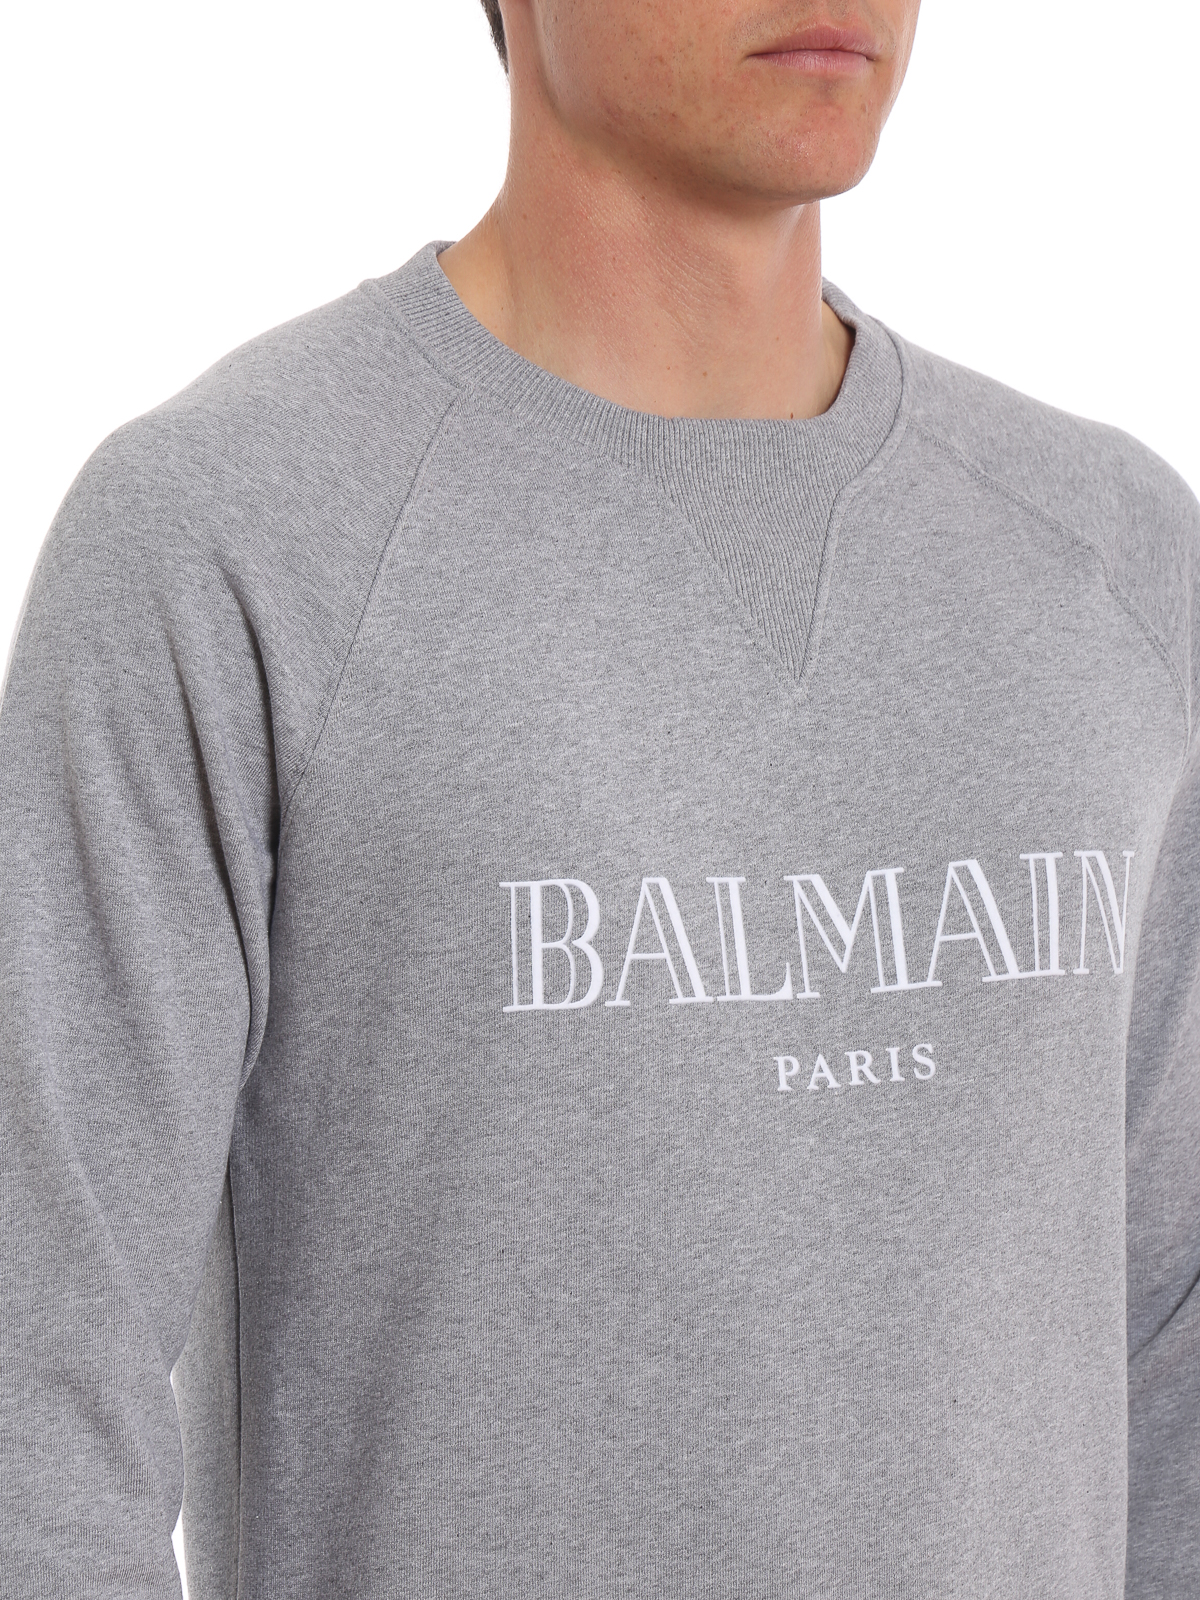 Sweatshirts & Balmain - Balmain logo melange sweatshirt - RH11679I0529AA